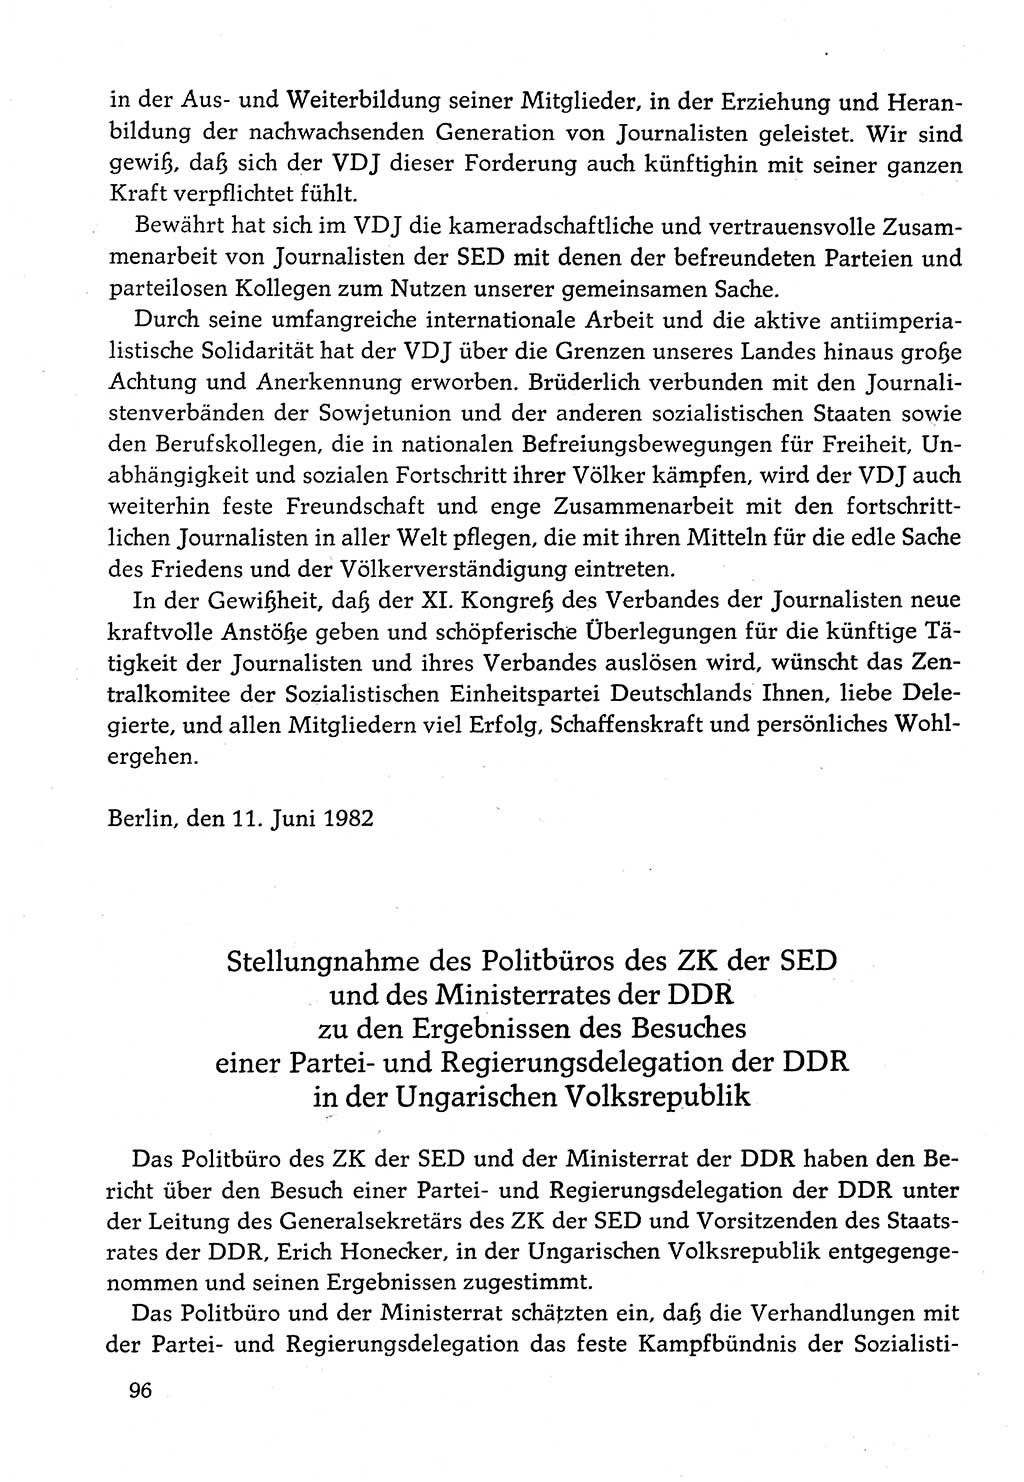 Dokumente der Sozialistischen Einheitspartei Deutschlands (SED) [Deutsche Demokratische Republik (DDR)] 1982-1983, Seite 96 (Dok. SED DDR 1982-1983, S. 96)